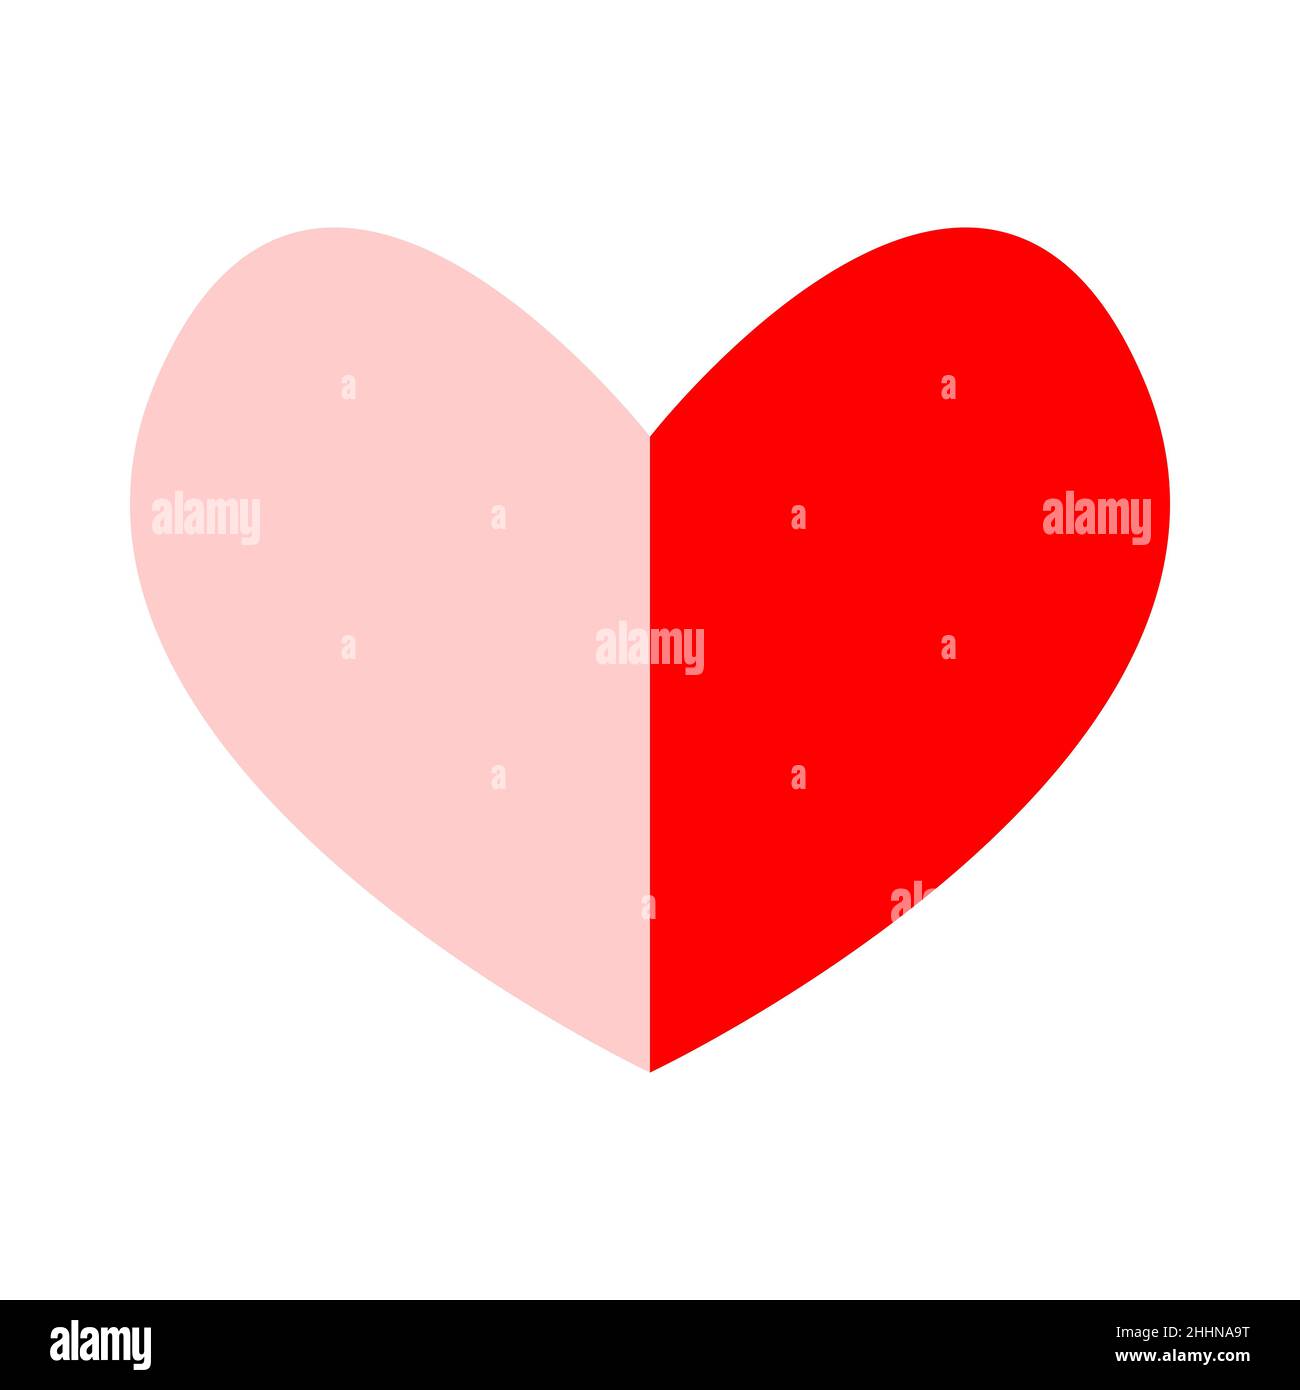 Rosa e rossa due metà di cuore collegate insieme. Disegno grafico a forma di cuore isolato. Cartello di San Valentino. Icona Web a due colori. Romantico amore sym Illustrazione Vettoriale